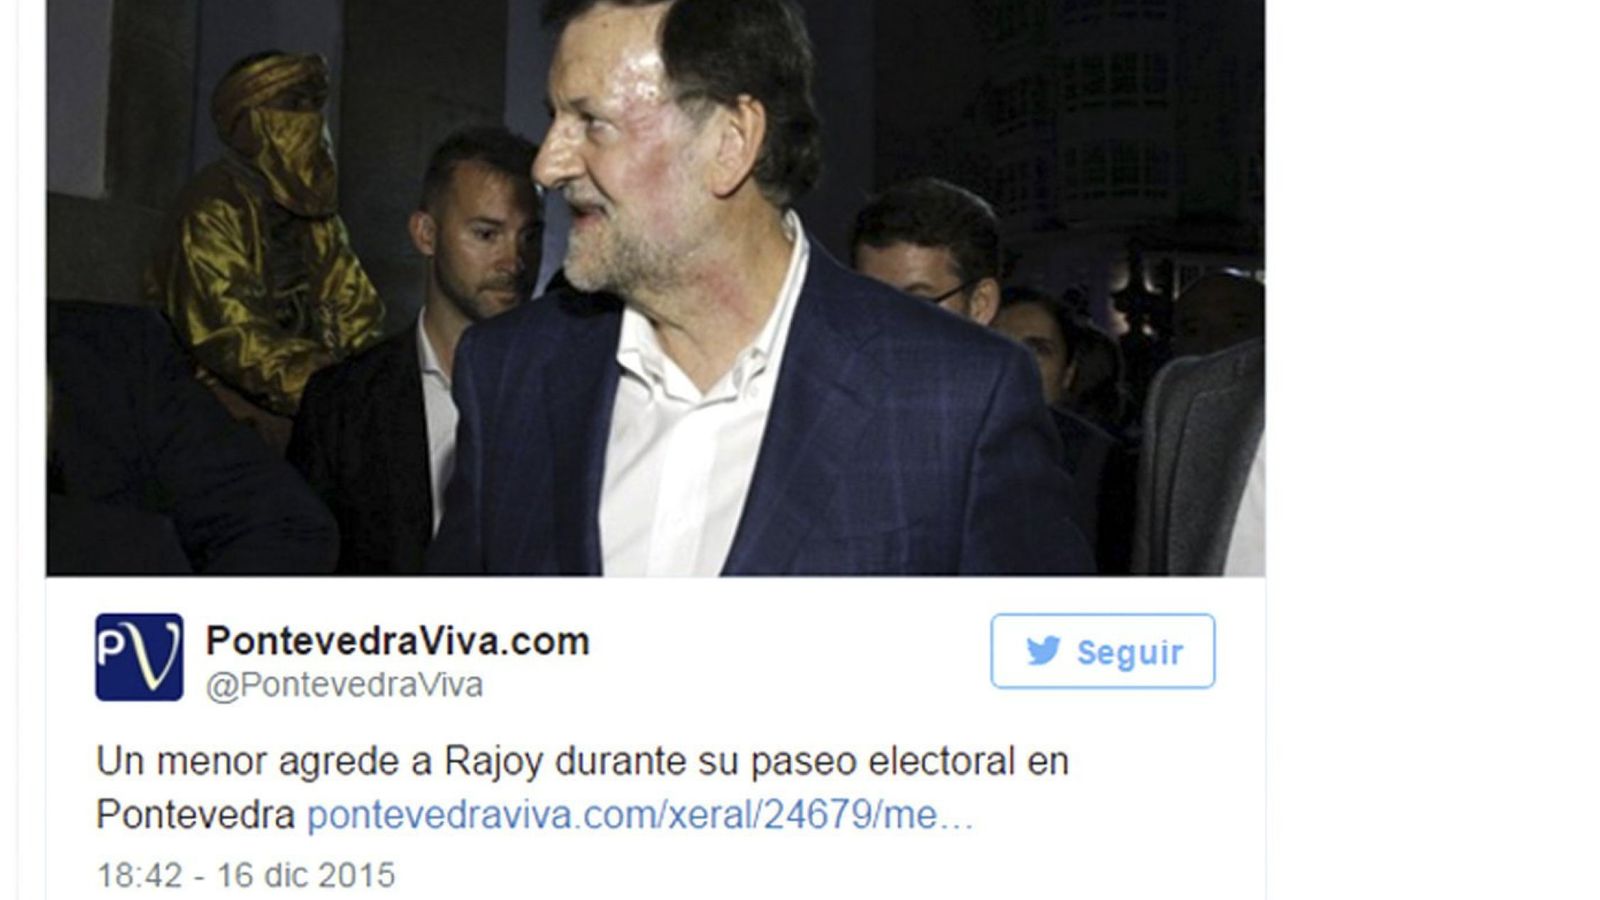 Foto: Imagen del presidente del Gobierno, Mariano Rajoy, tras ser agredido este miércoles. (Pontevedra Viva)